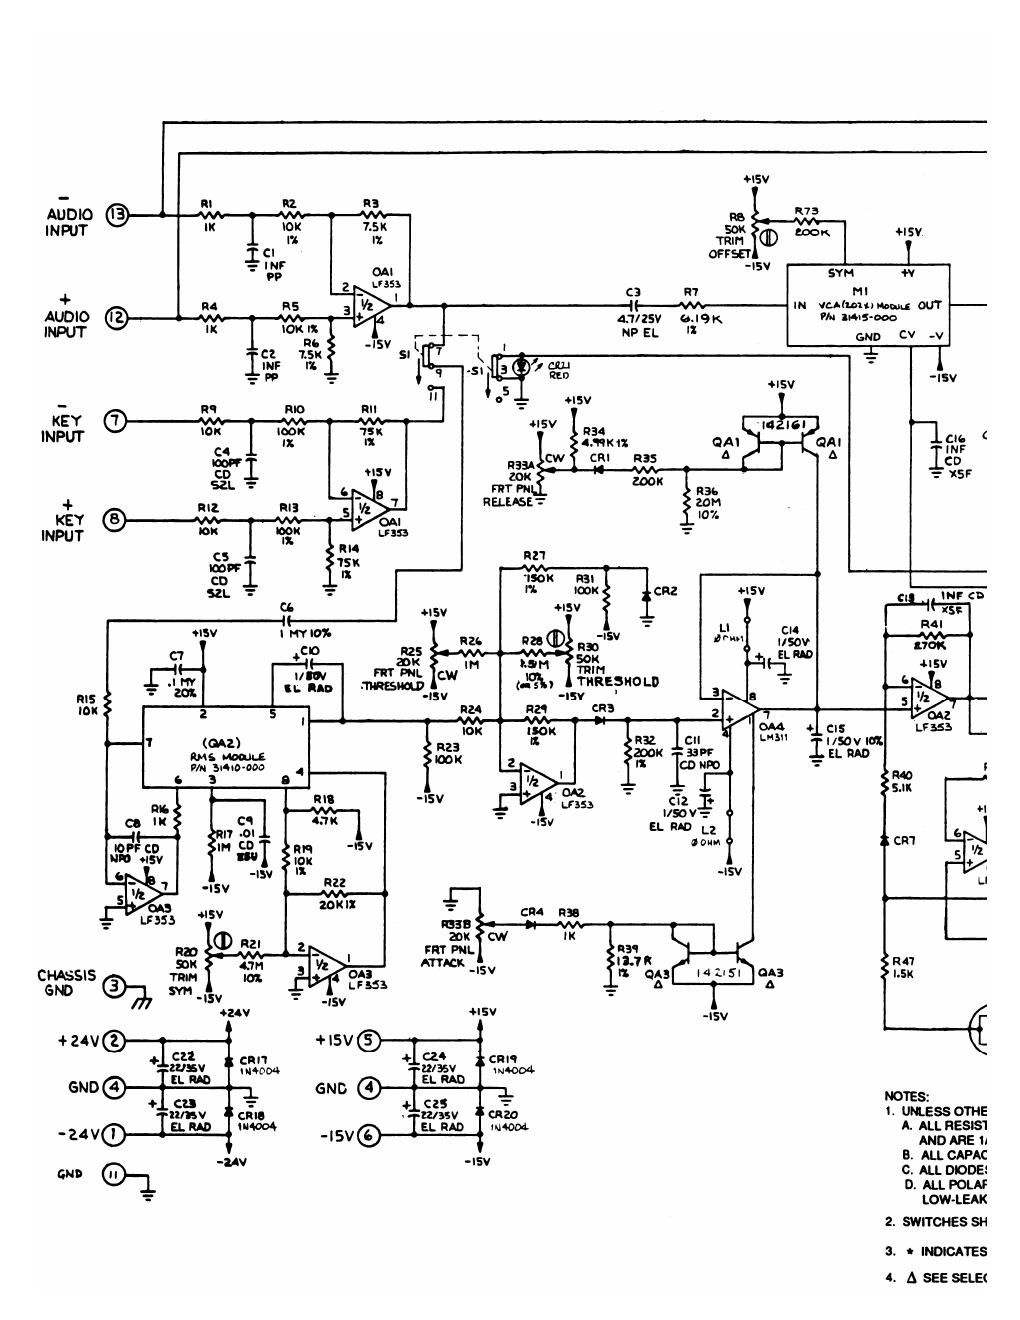 dbx 904 schematic